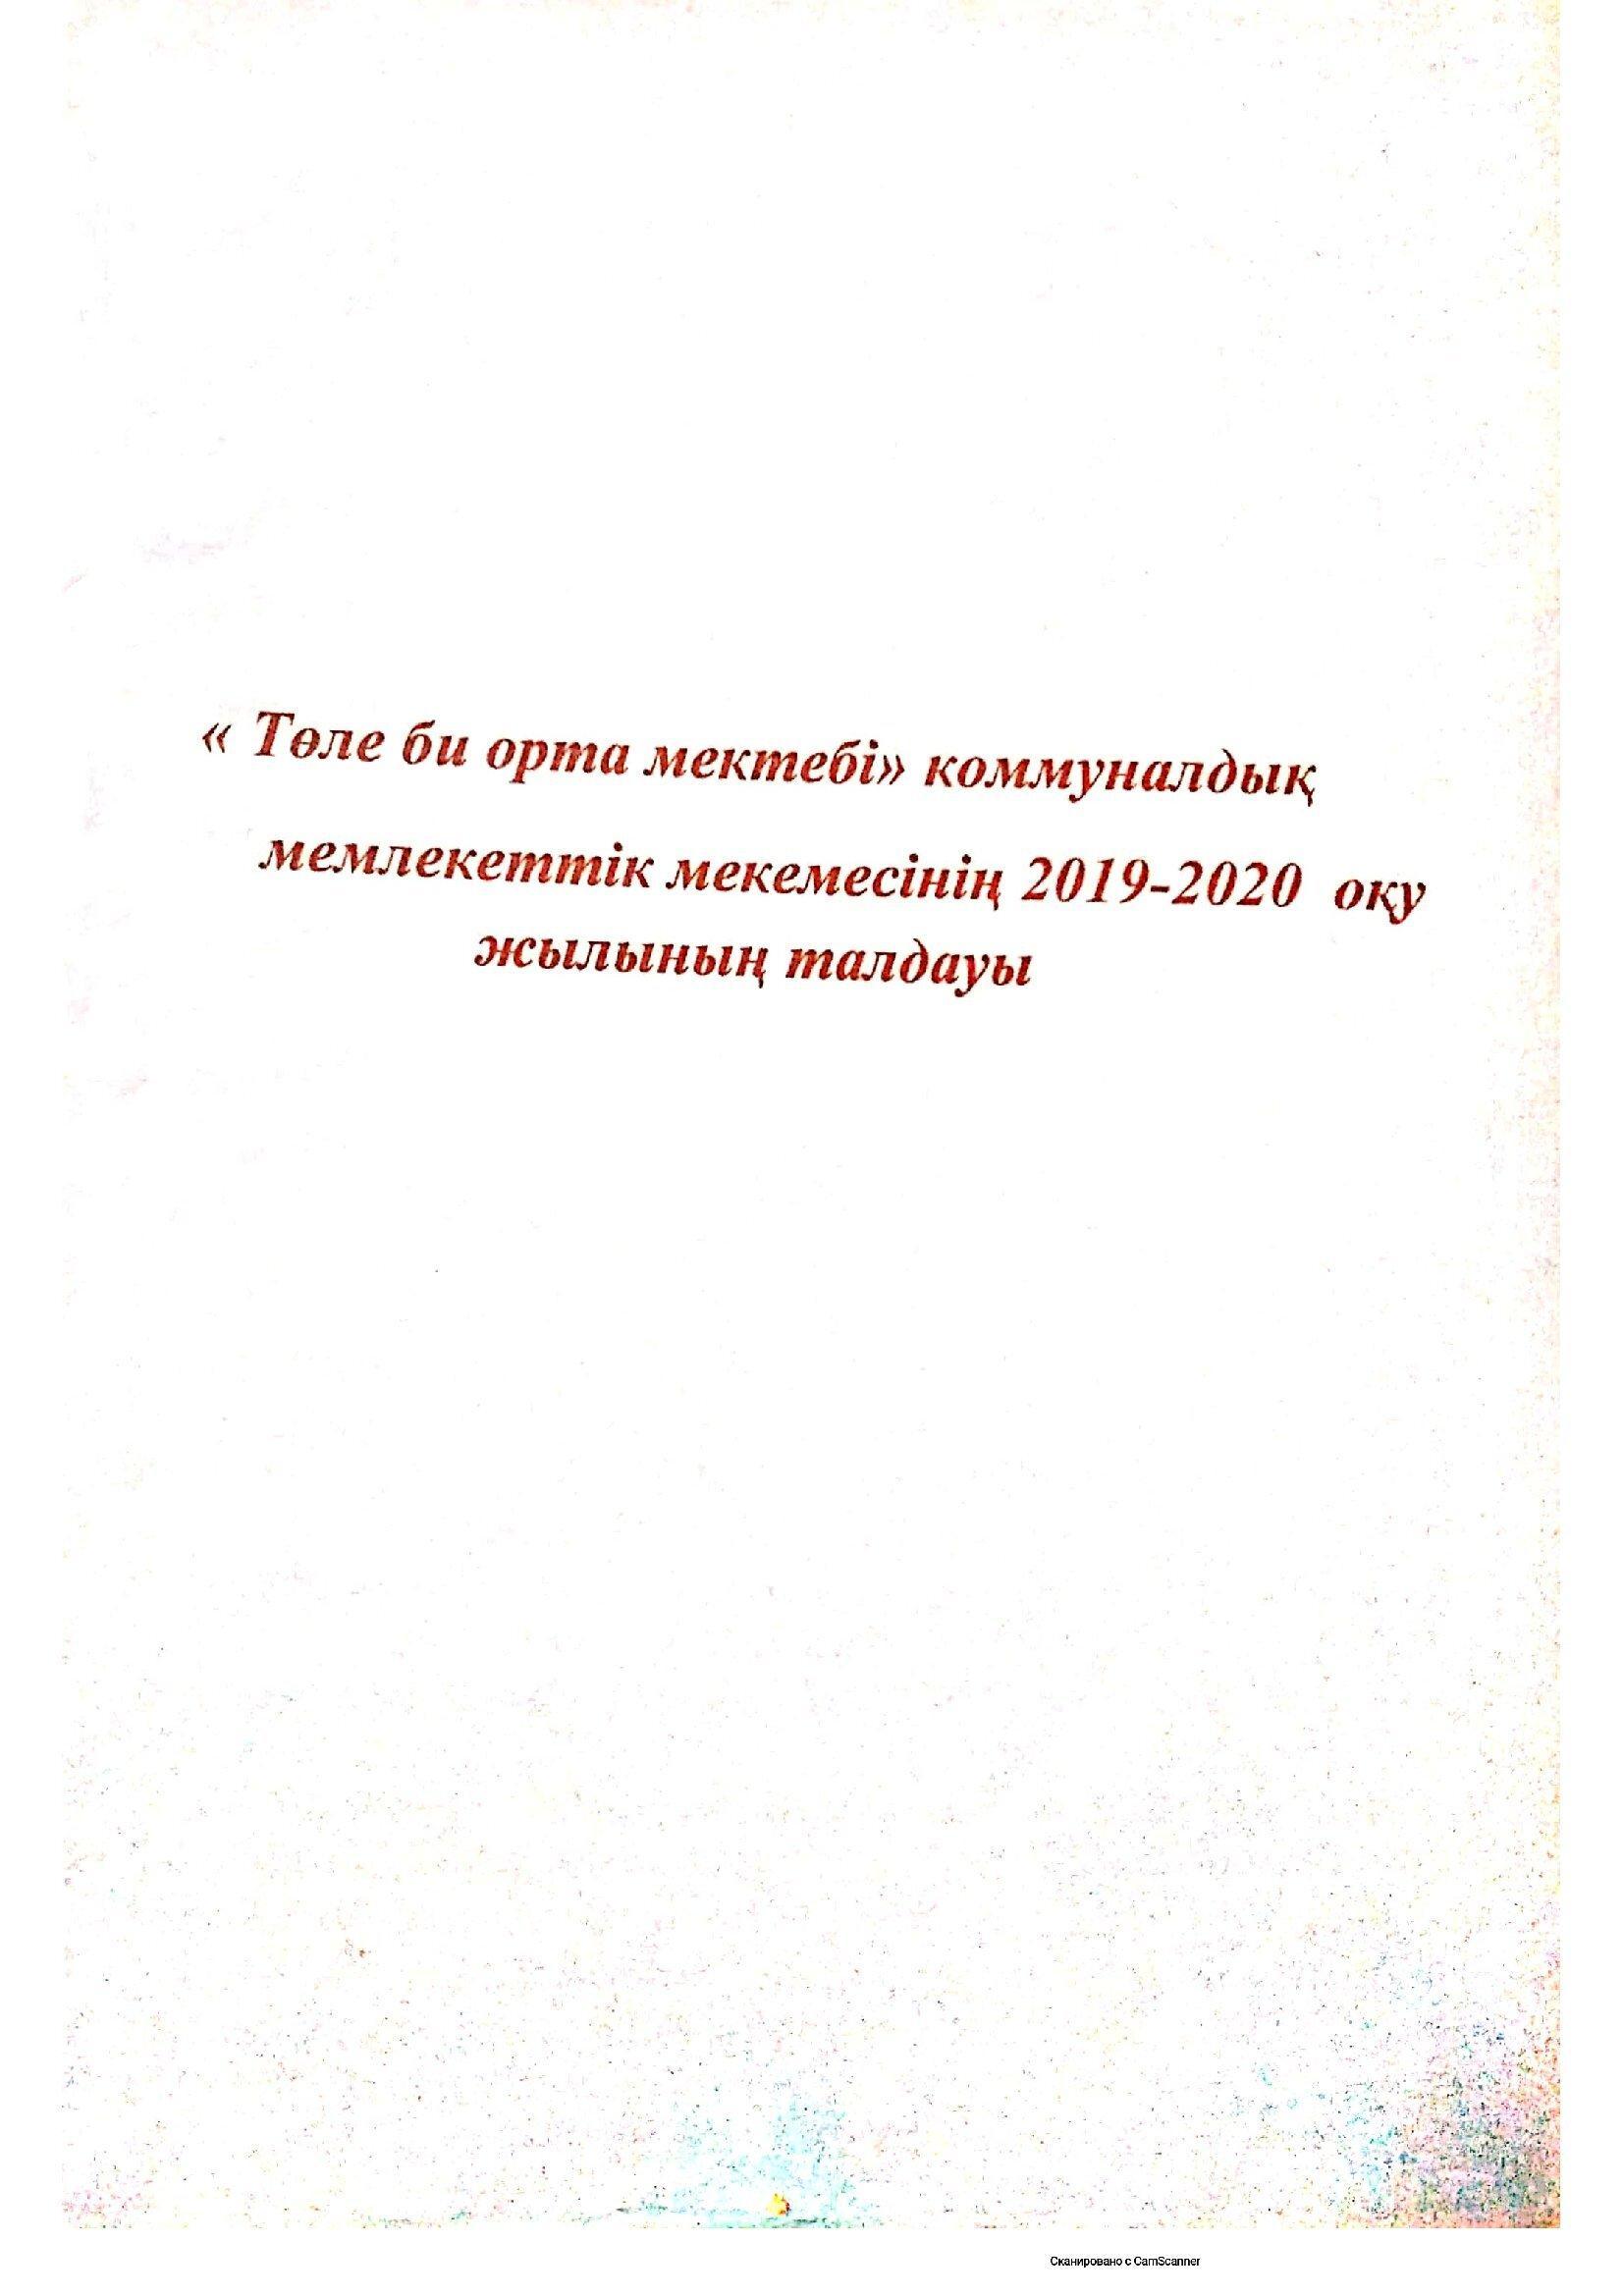 2019-2020